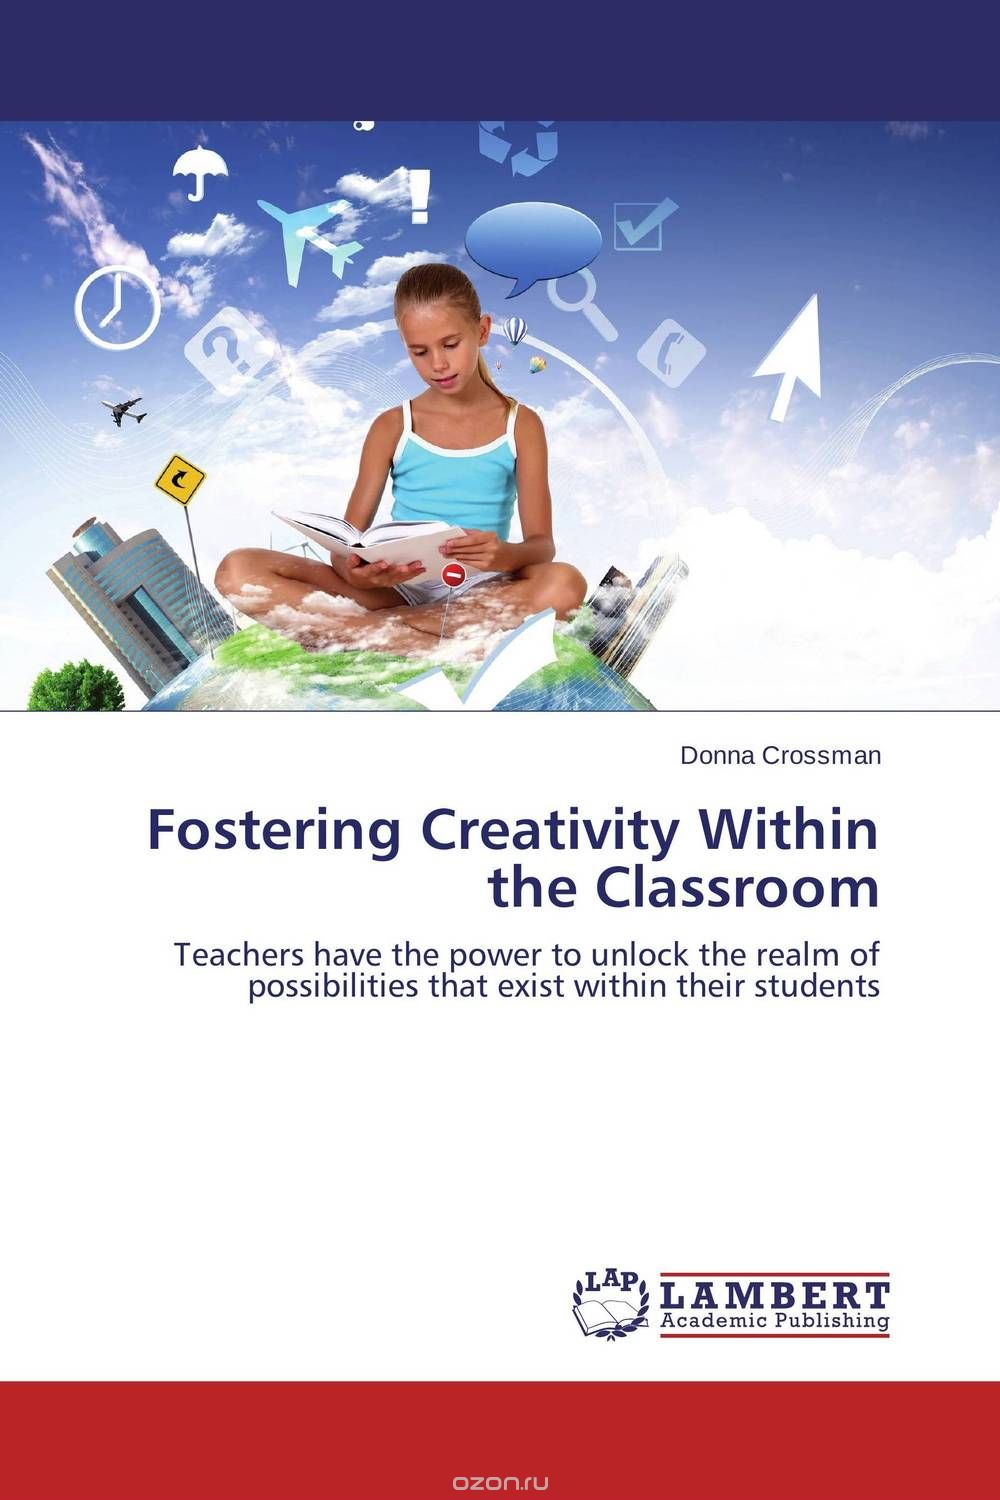 Скачать книгу "Fostering Creativity Within the Classroom"